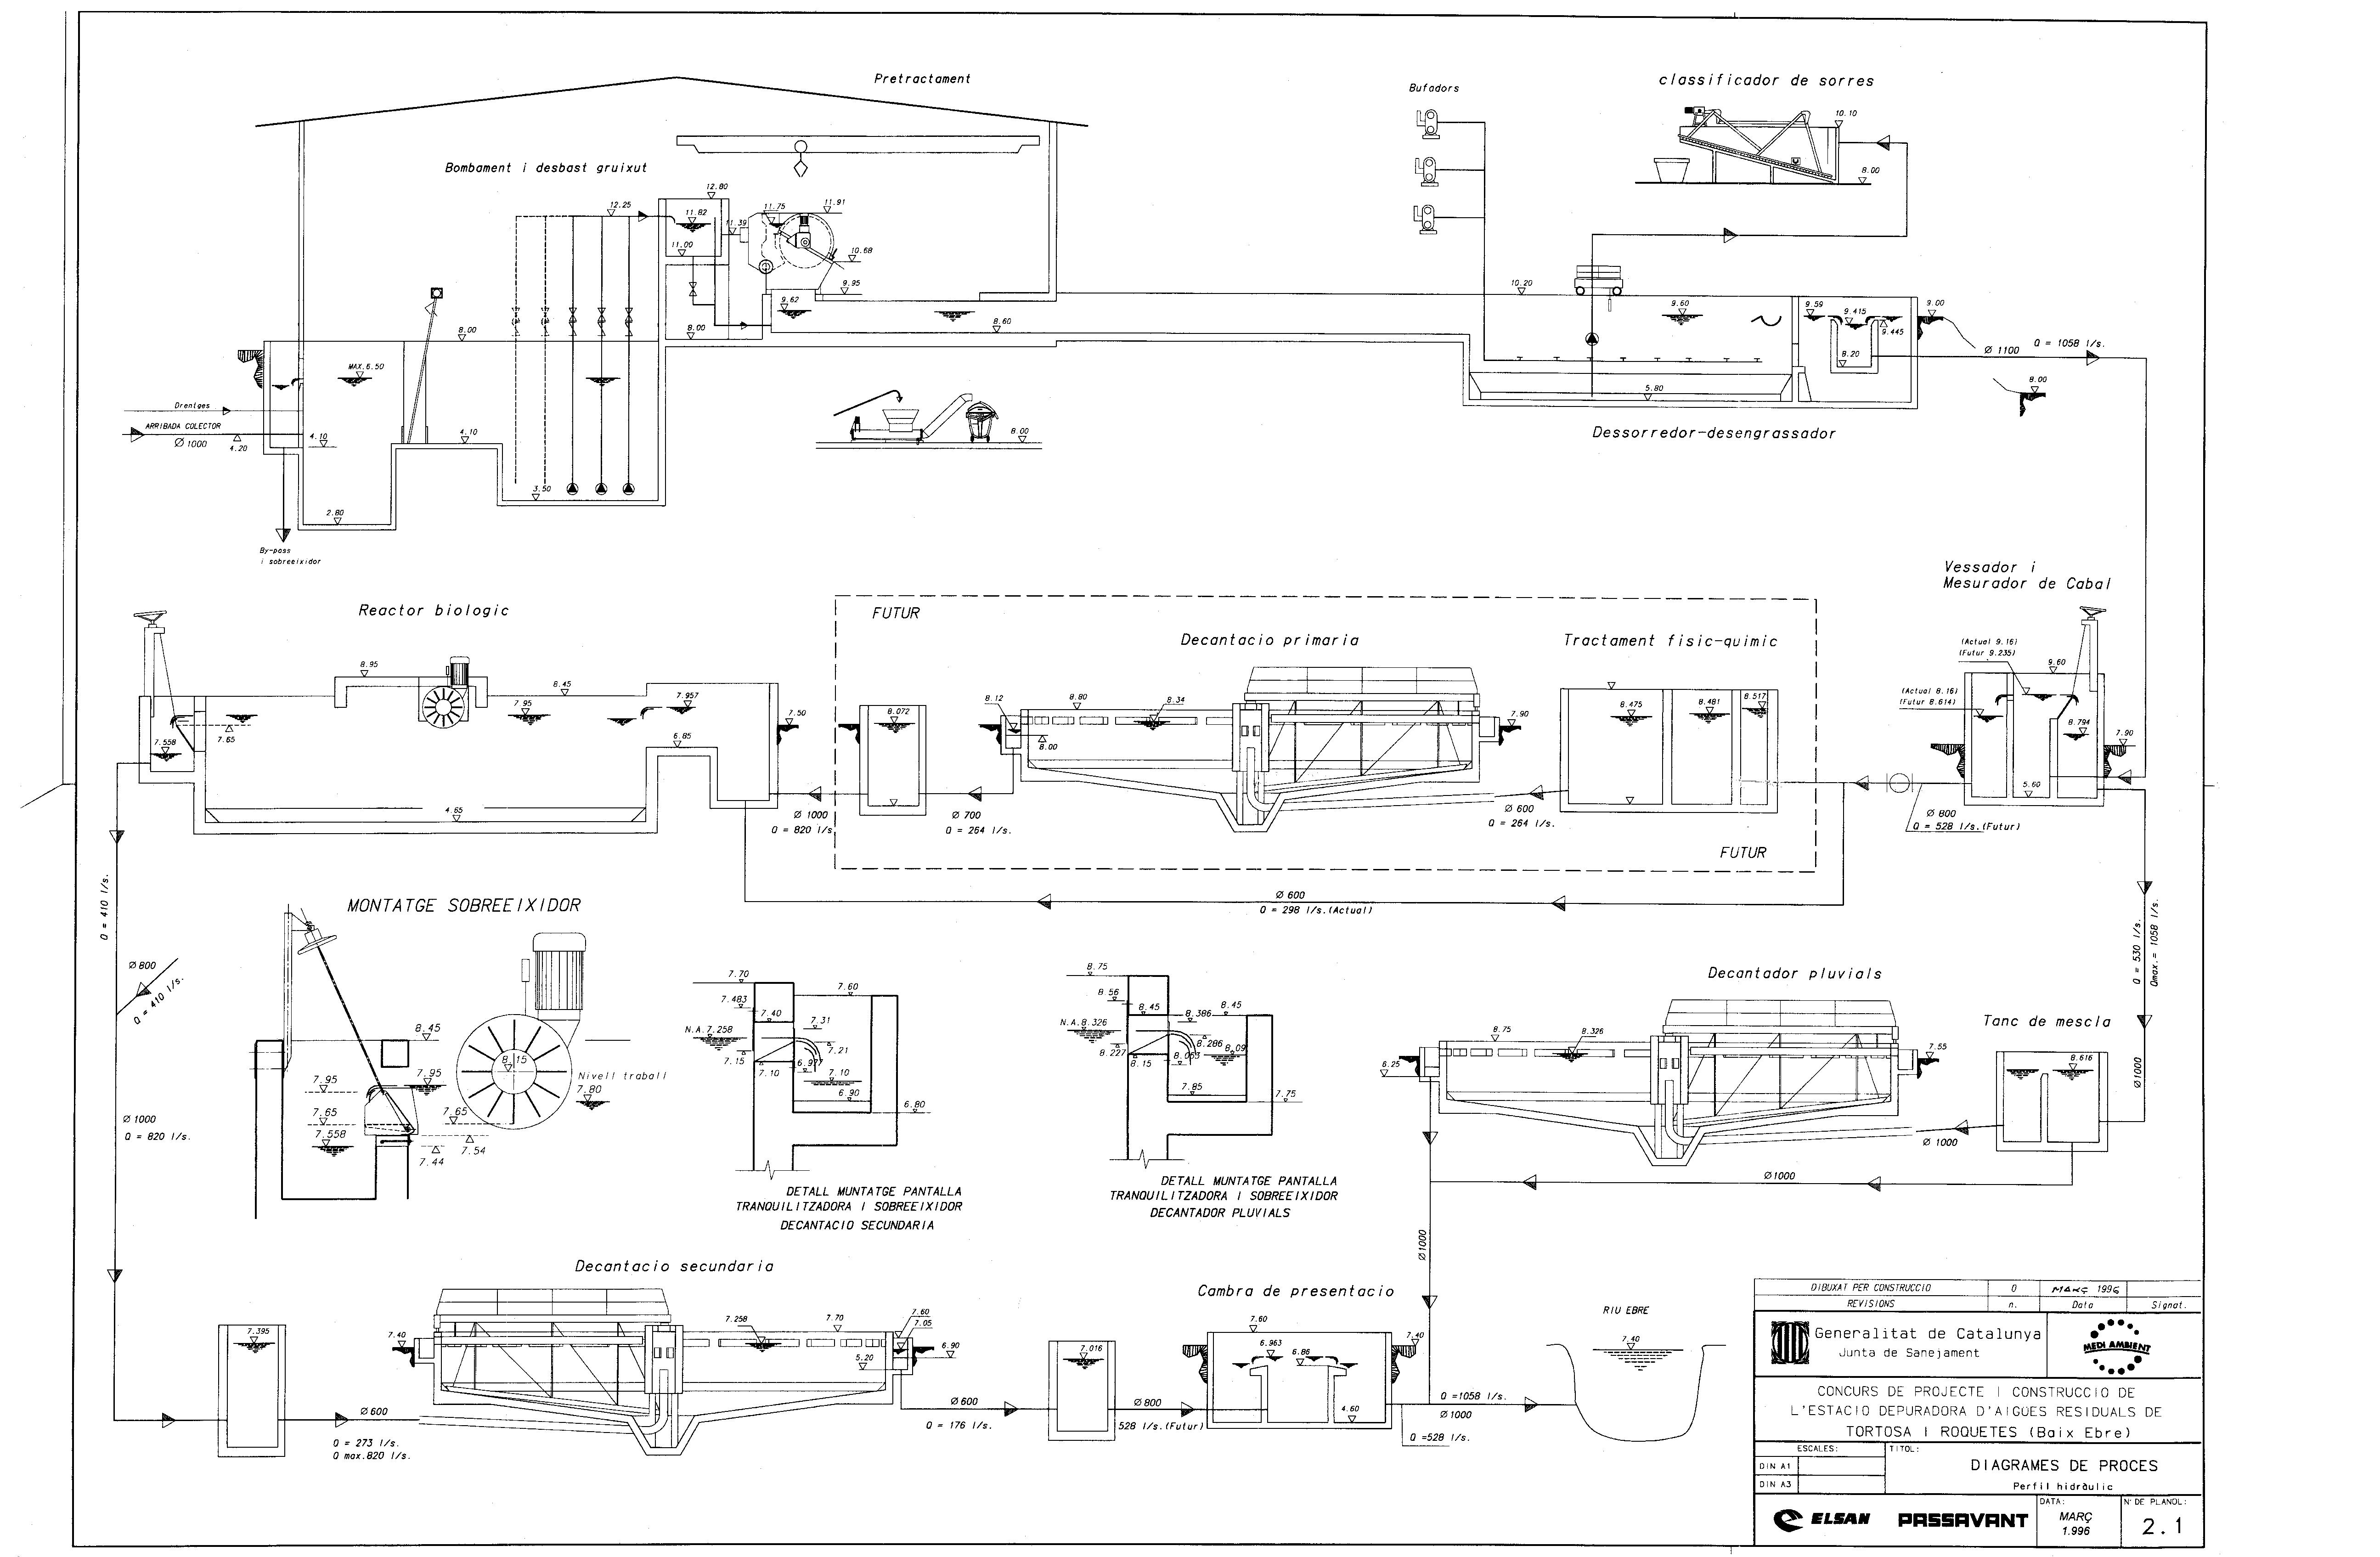 Diagrama procés EDAR Tortosa-Roquetes